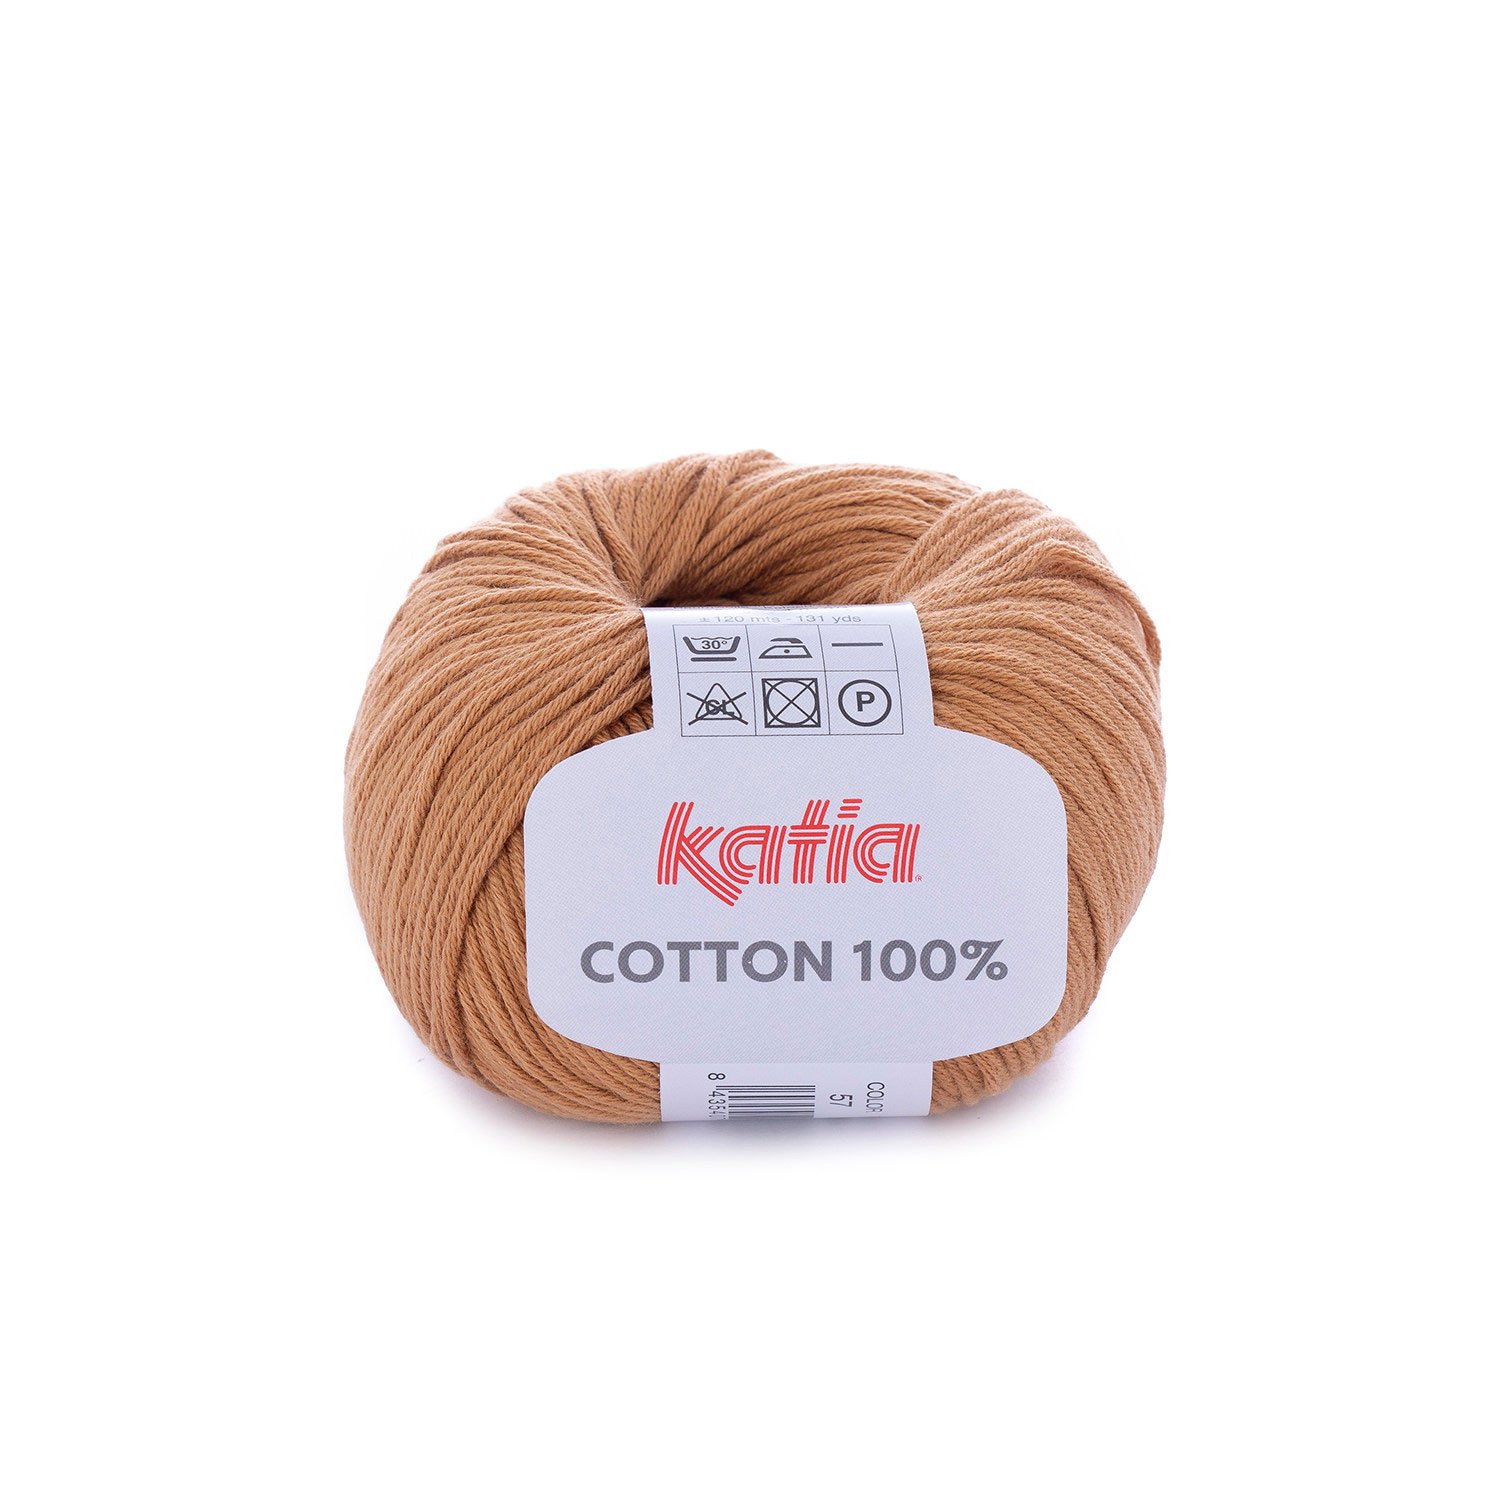 1 pelote Coton mercerisé Garden 10 vert 48 Divers Garden 10 - 48 : Toutes  en Laine-Vente de laine à tricoter pas chère et accessoires tricot